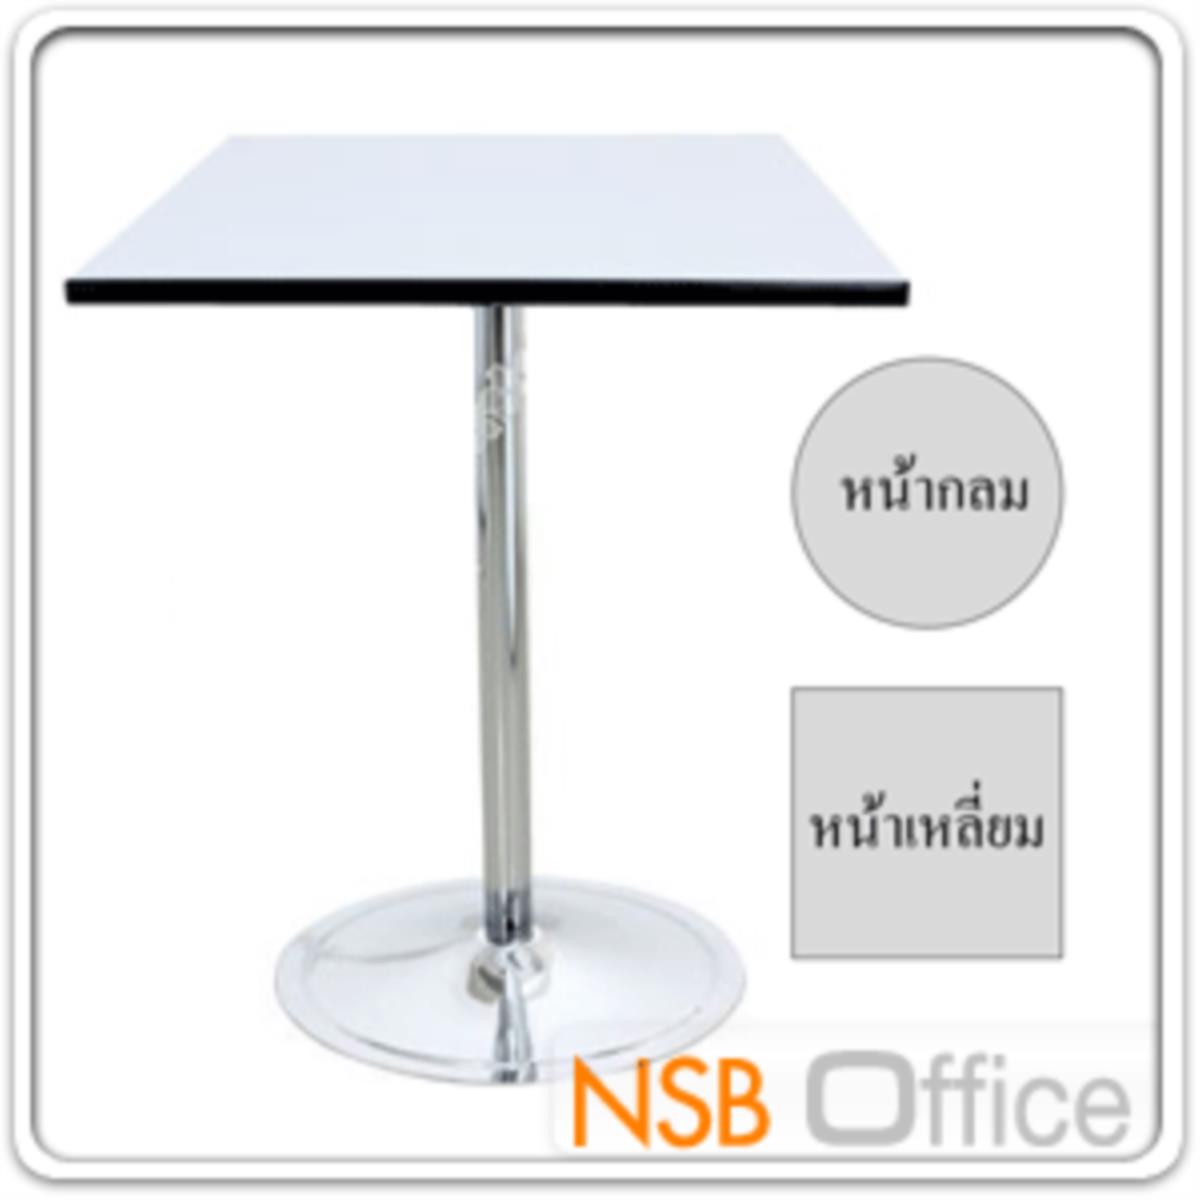 โต๊ะหน้าโฟเมก้าขาว  ขนาด 60W ,75W ,60Di ,75Di cm. ขาเหล็กโครเมี่ยมบฐานจาน ขาเหล็กจานกลมชุบโครเมี่ยม